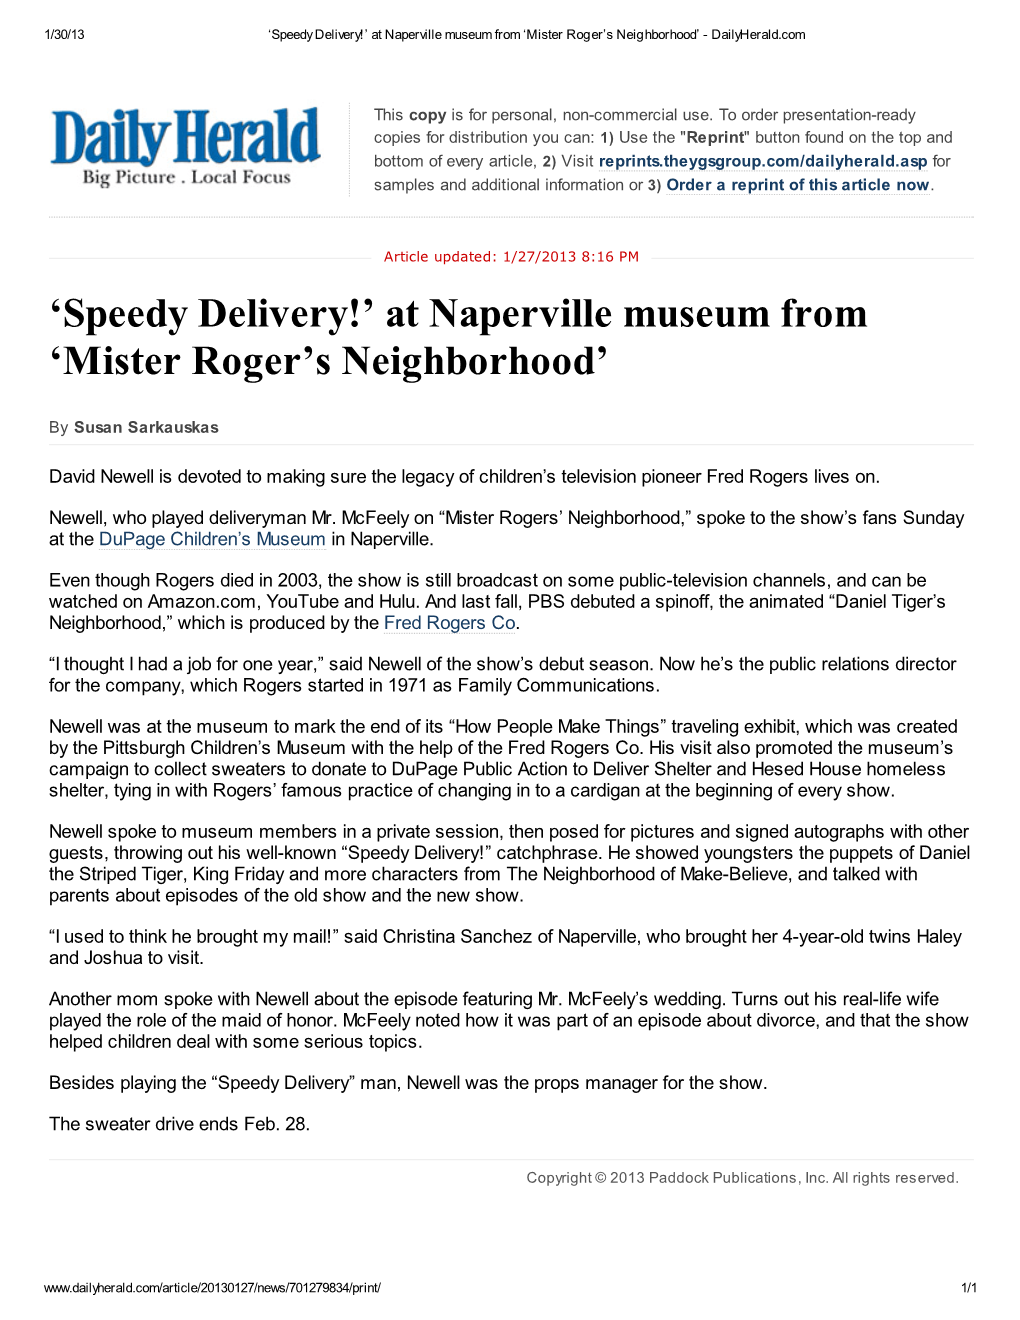 'Mister Roger's Neighborhood'